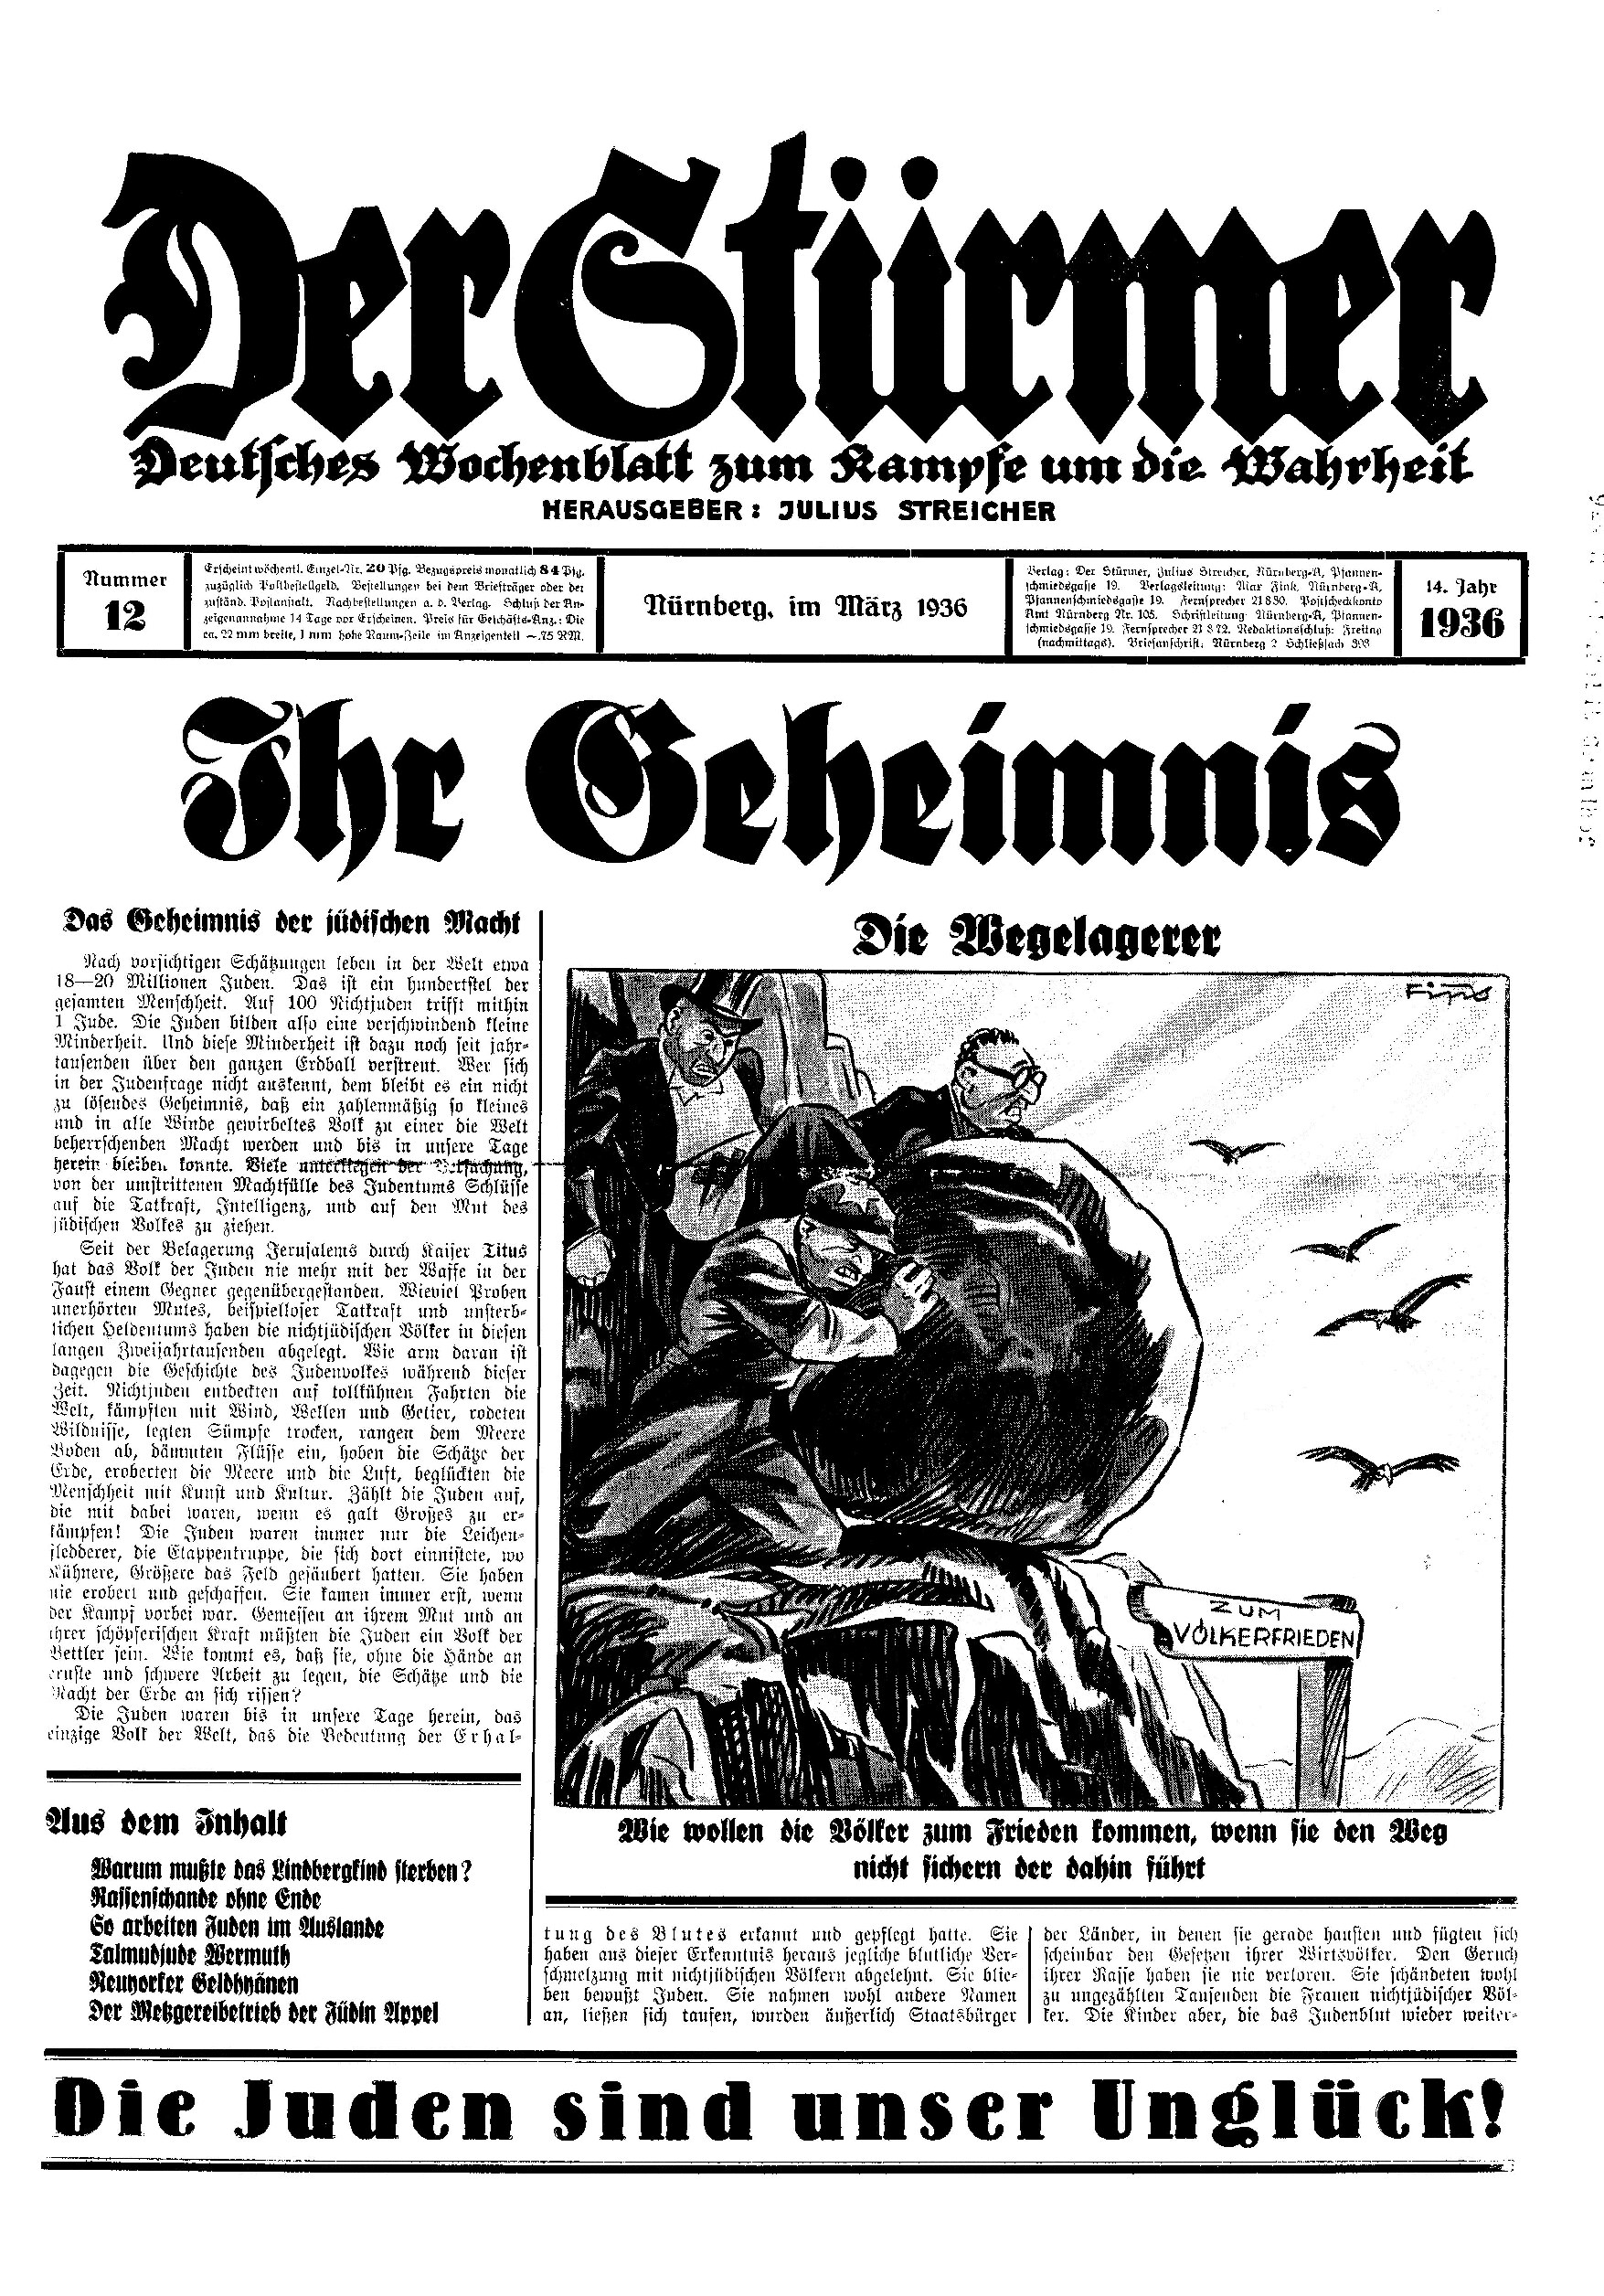 Der Stürmer - 1936 Nr. 12 - Ihr Geheimnis